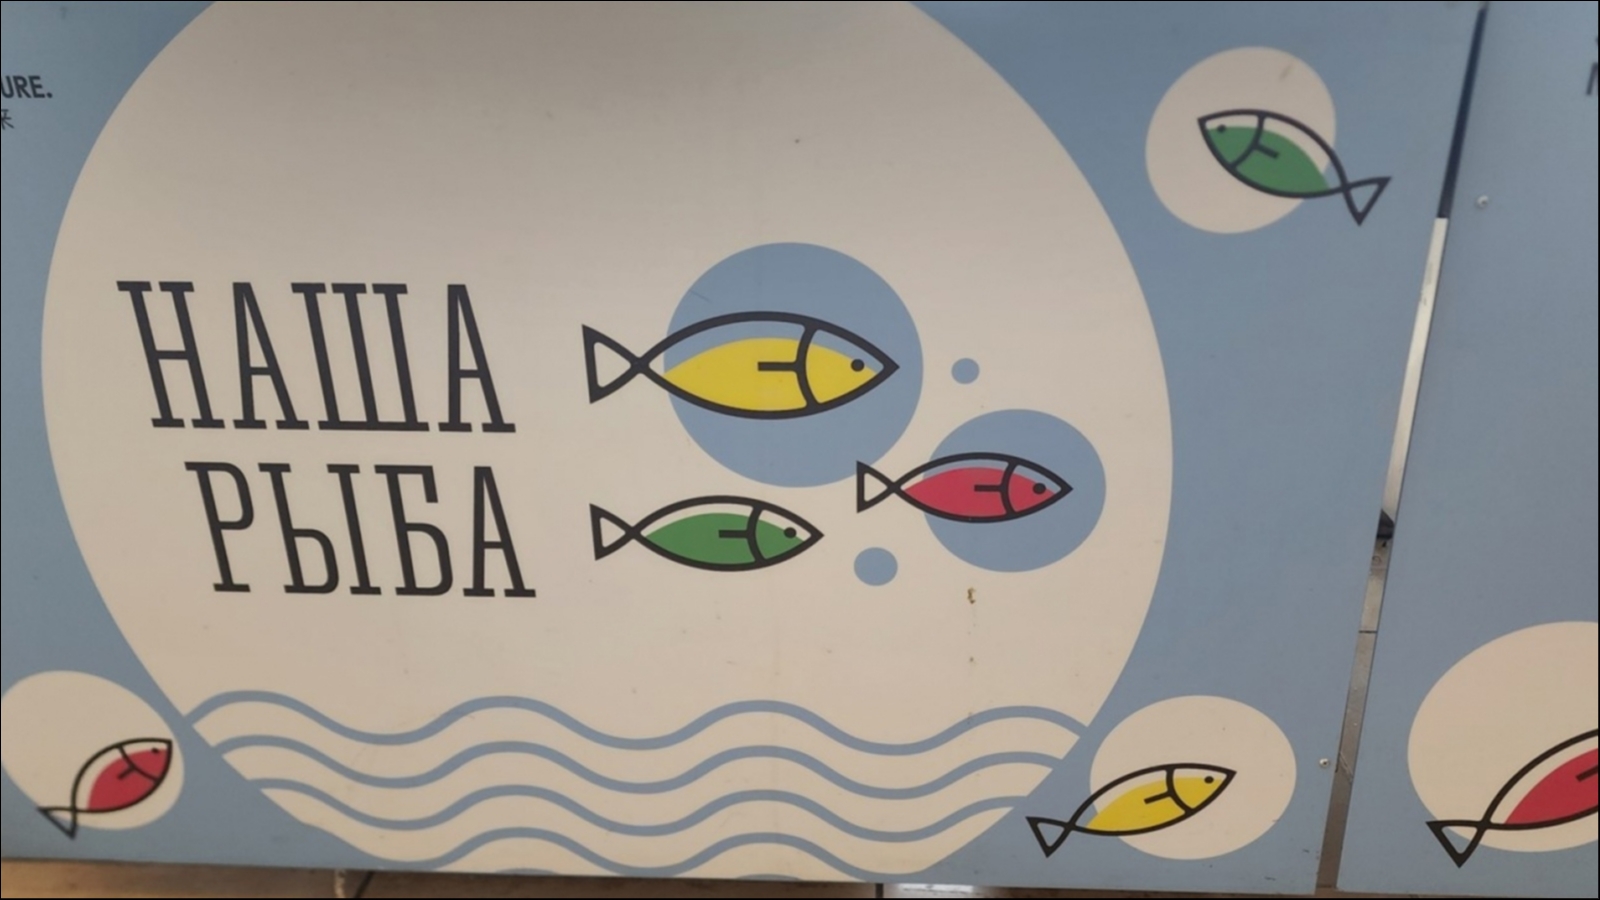 В Заозерске развернется ярмарка «Наша рыба»